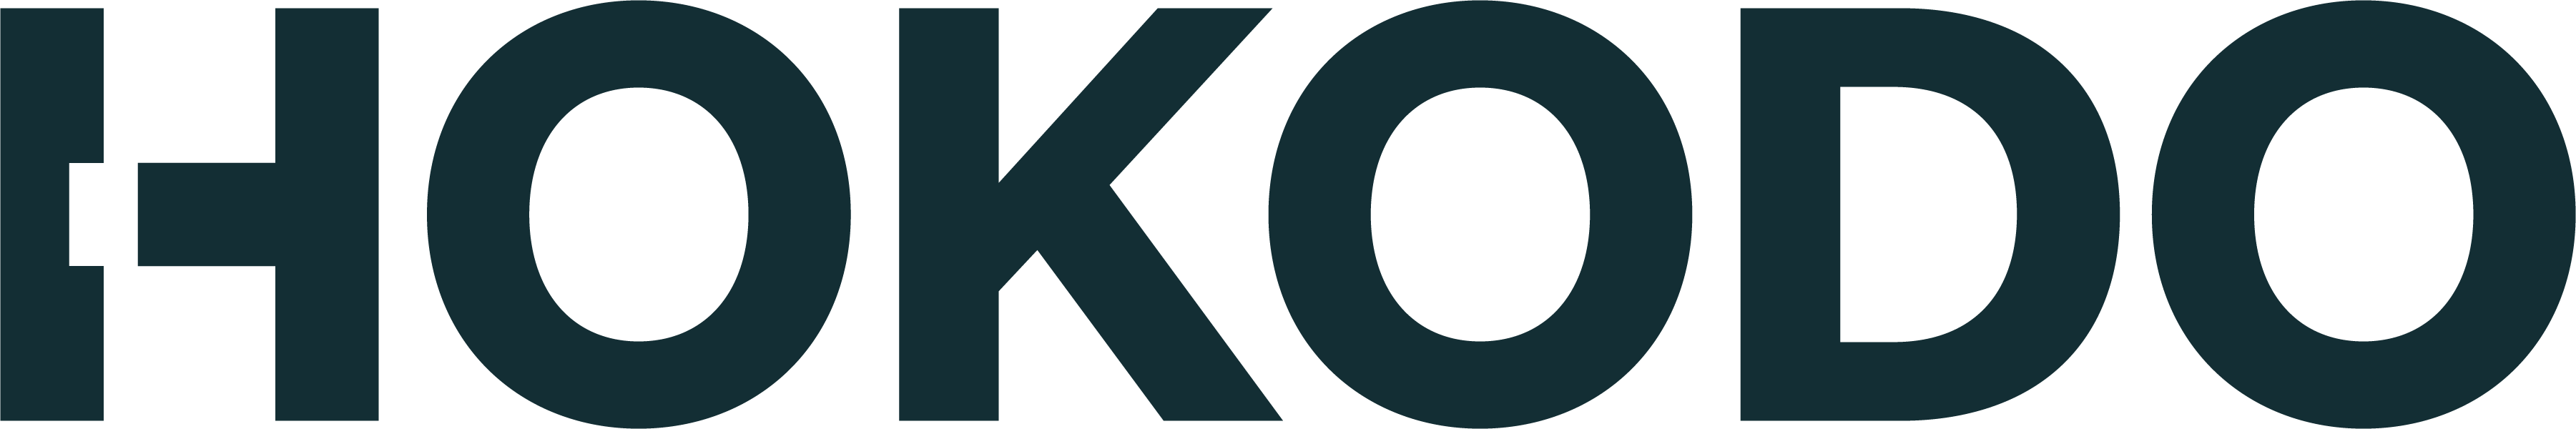 Hokodo logo